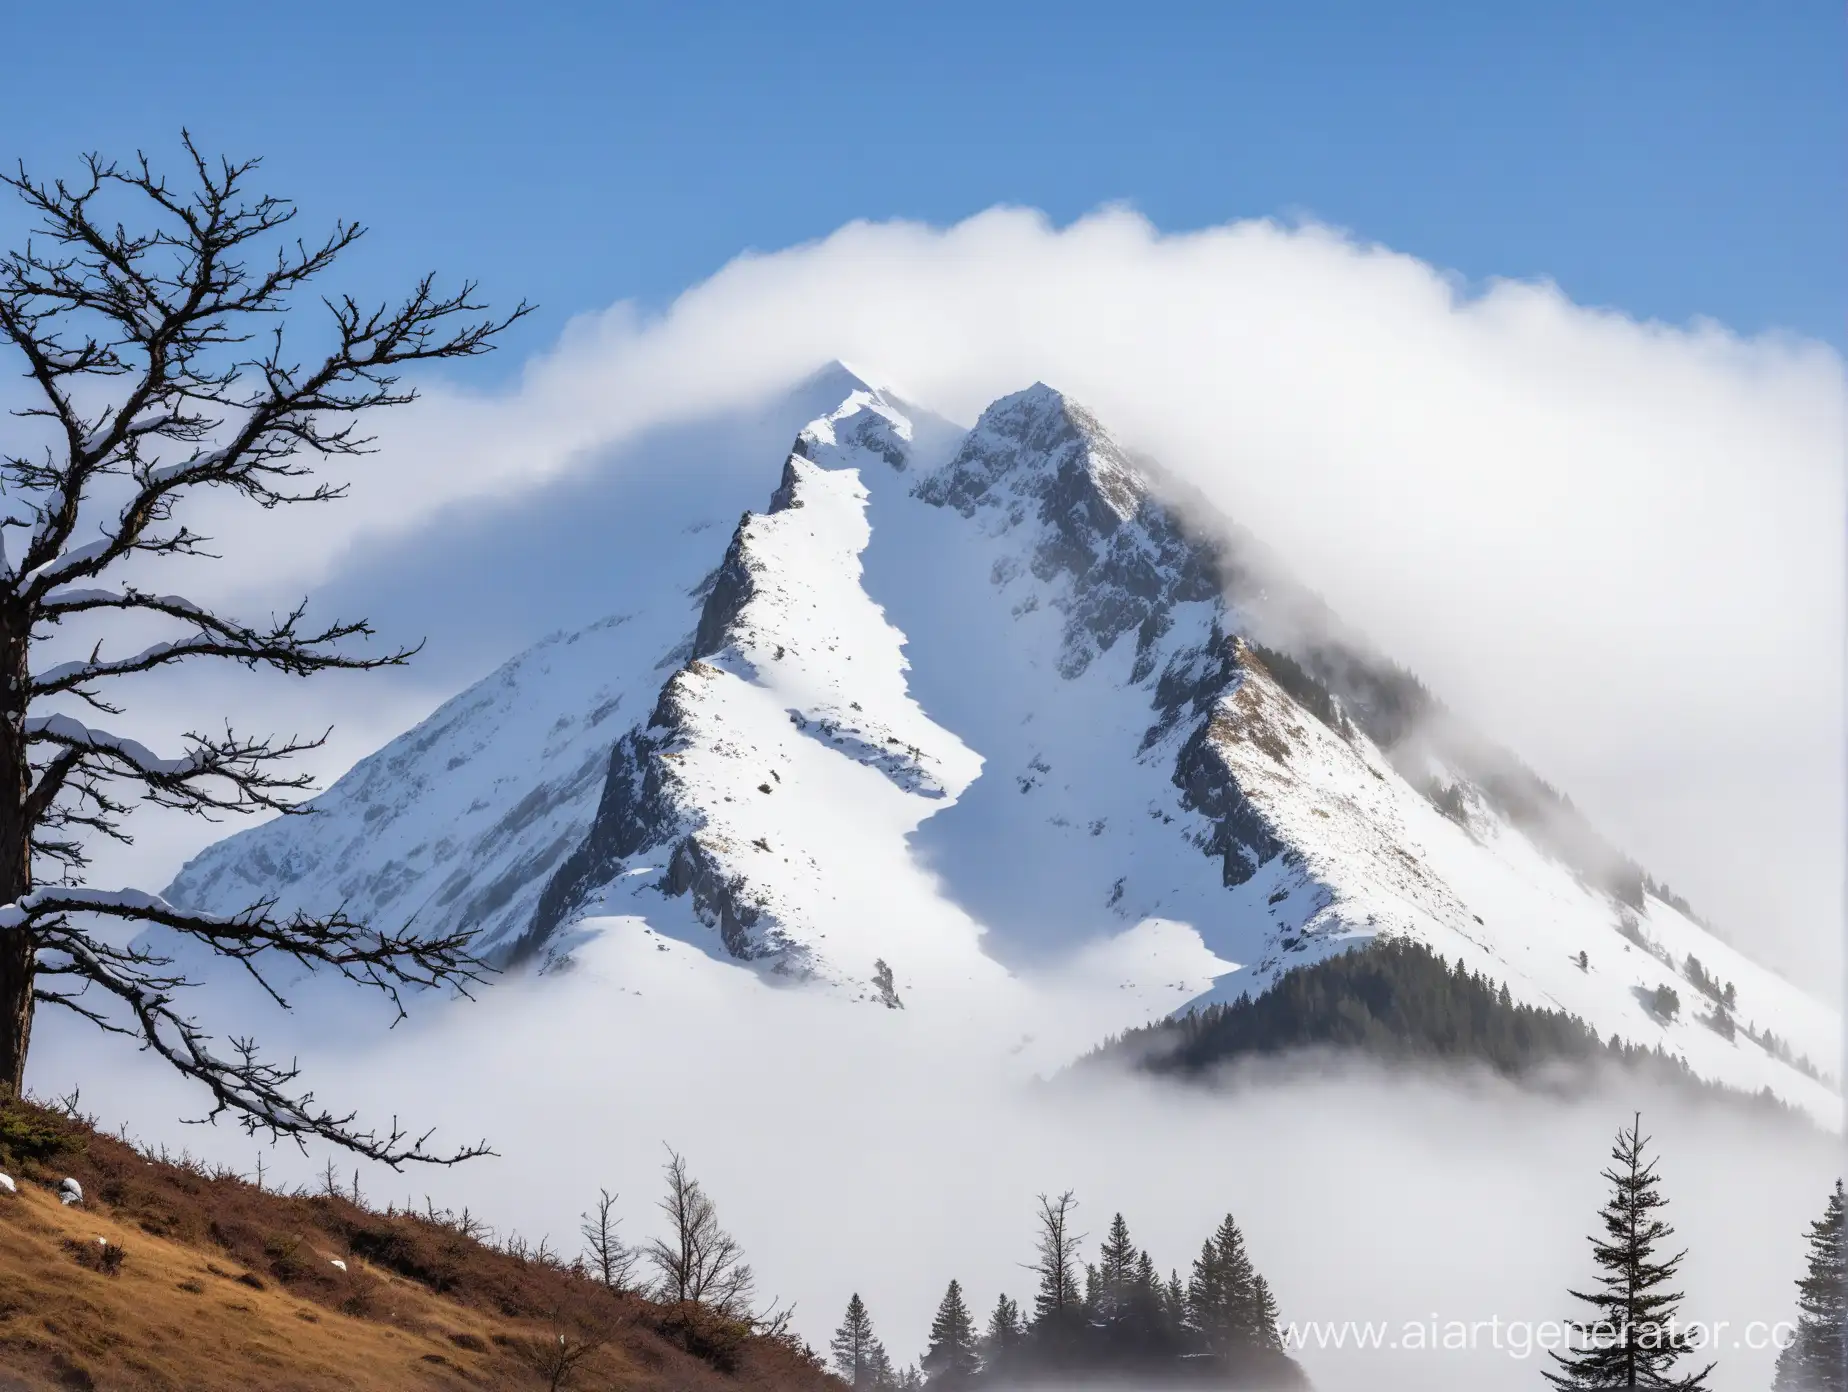 гора с заснеженным верхом, вокруг туман, на переднем плане земля и дерево
